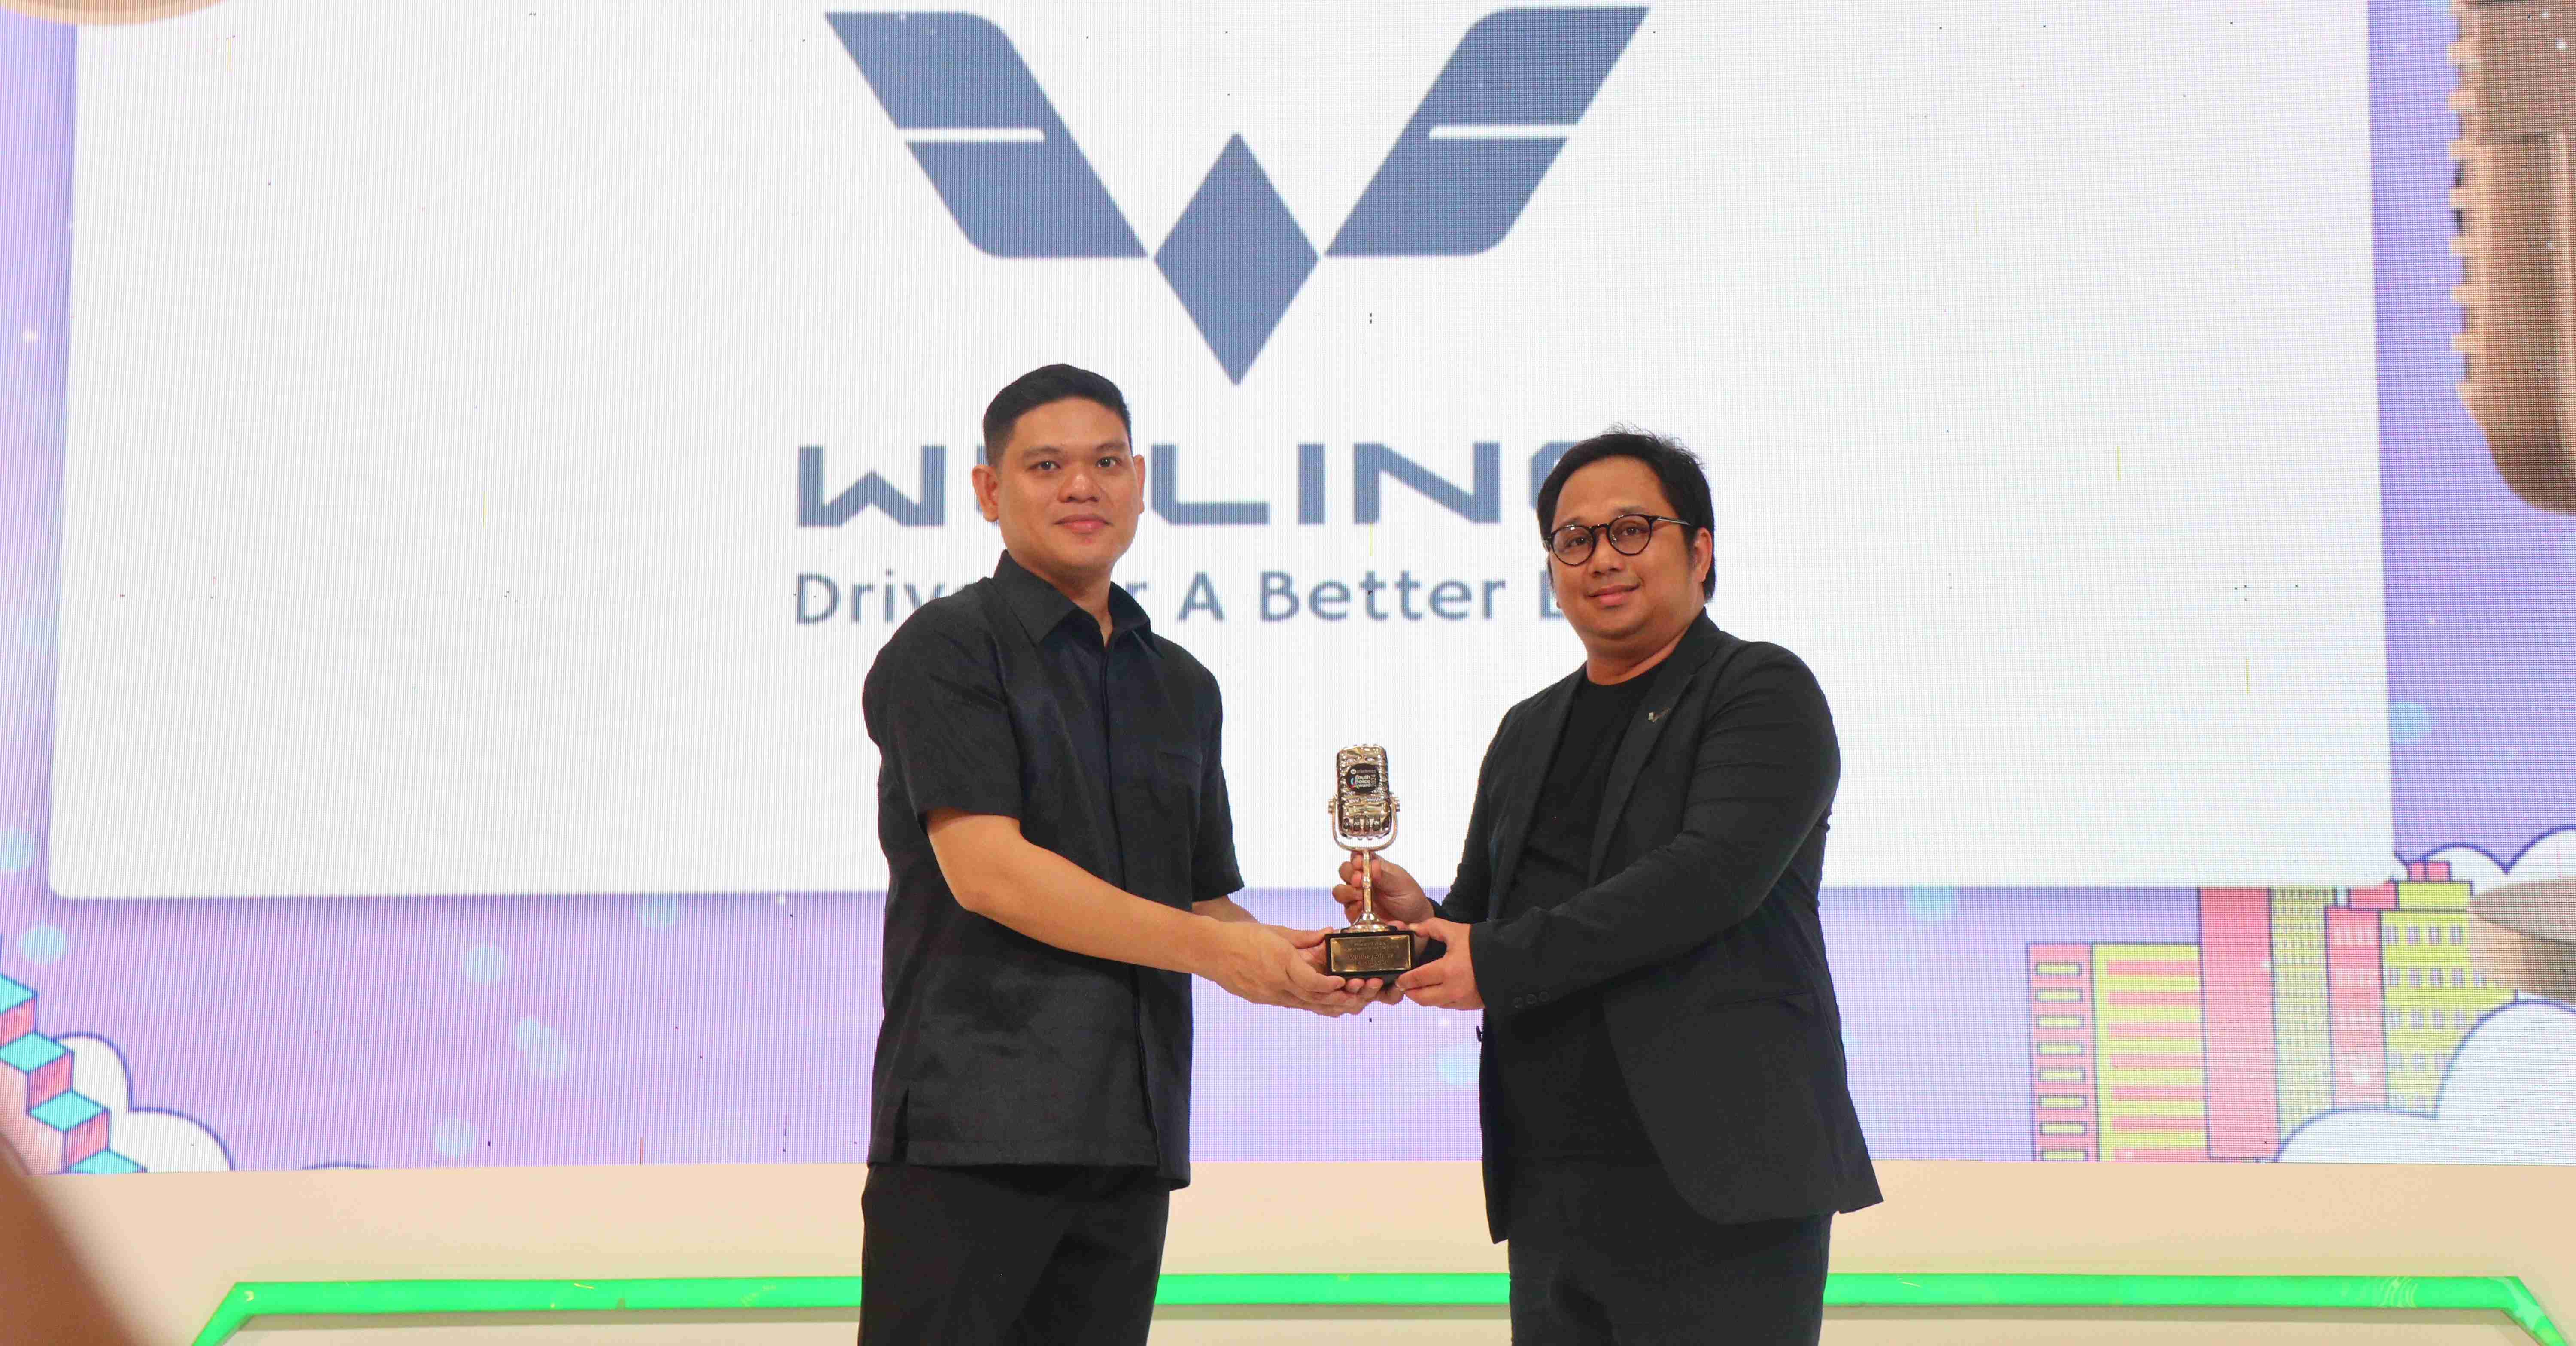 Wuling Air ev penghargaan 2 Dok WULING MOTORS INDONESIA.jpg